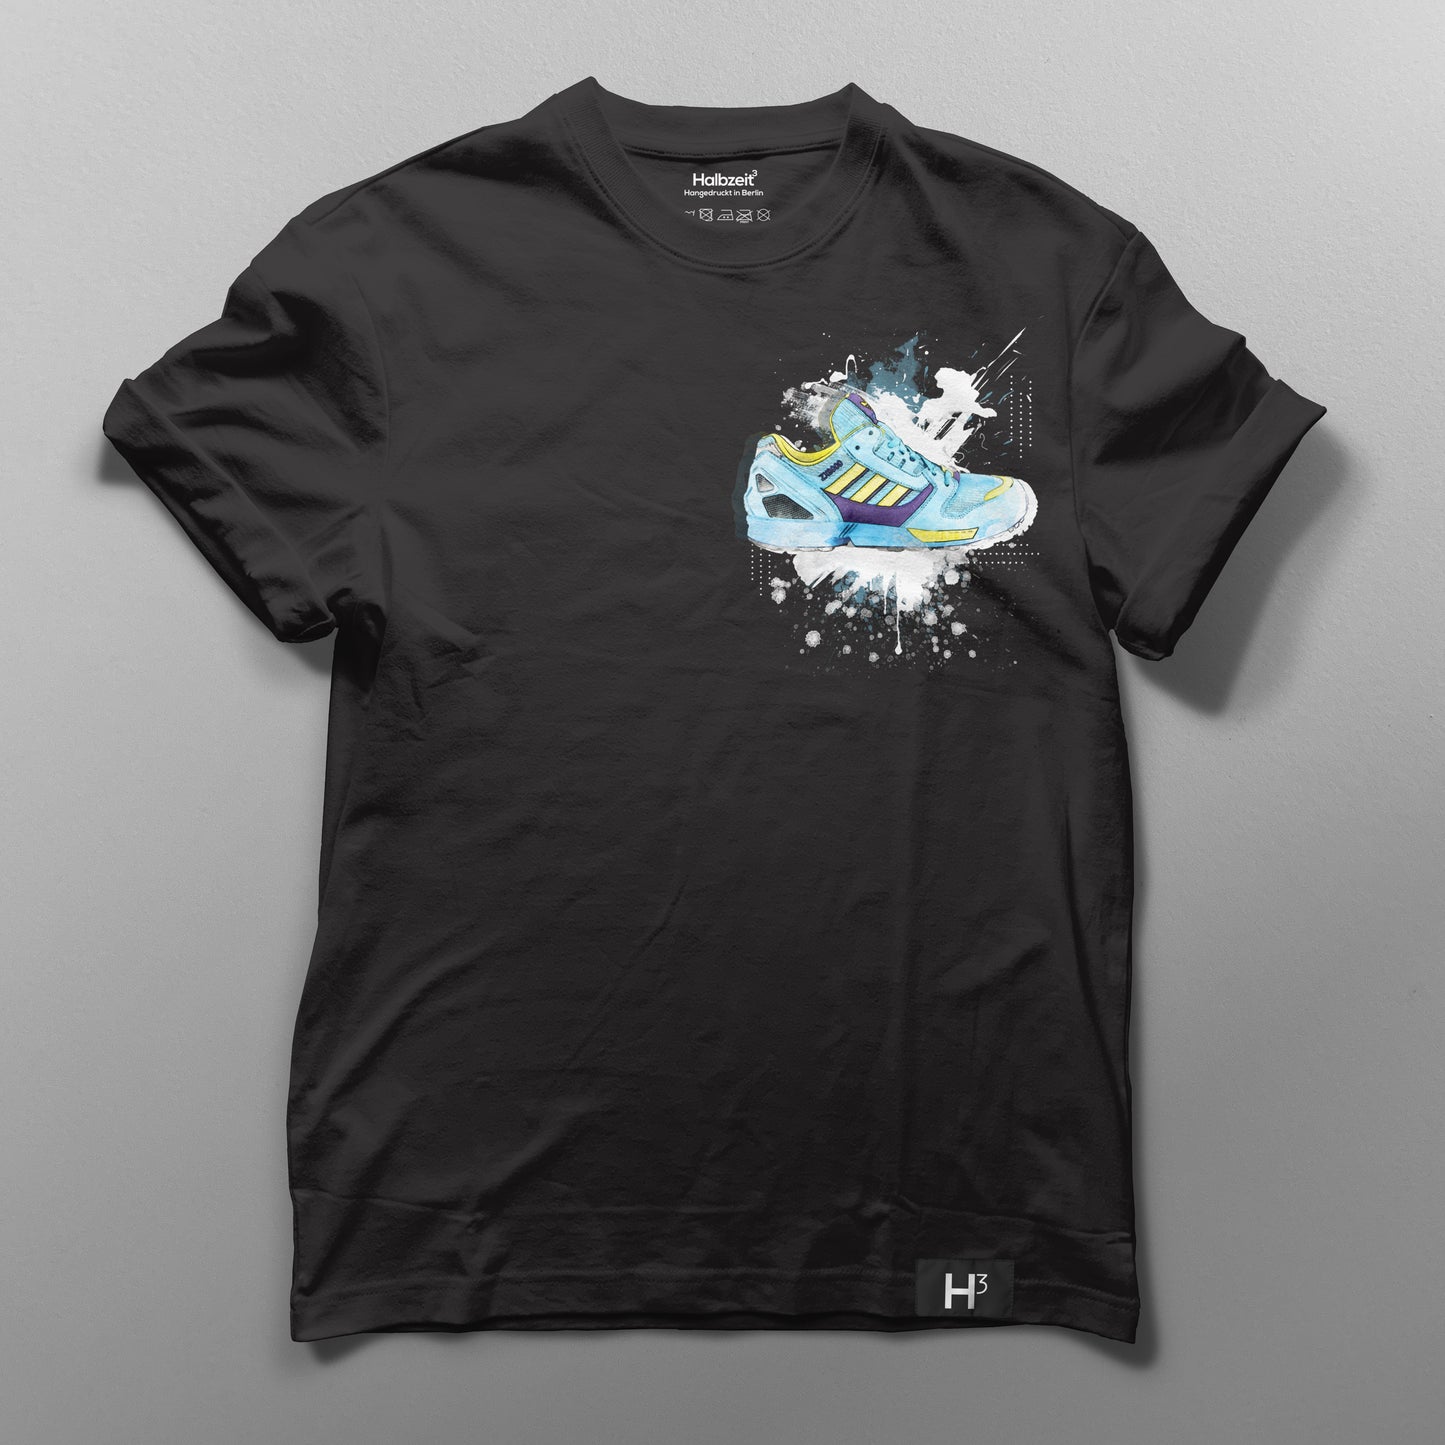 T-Shirt "Aqua" Small